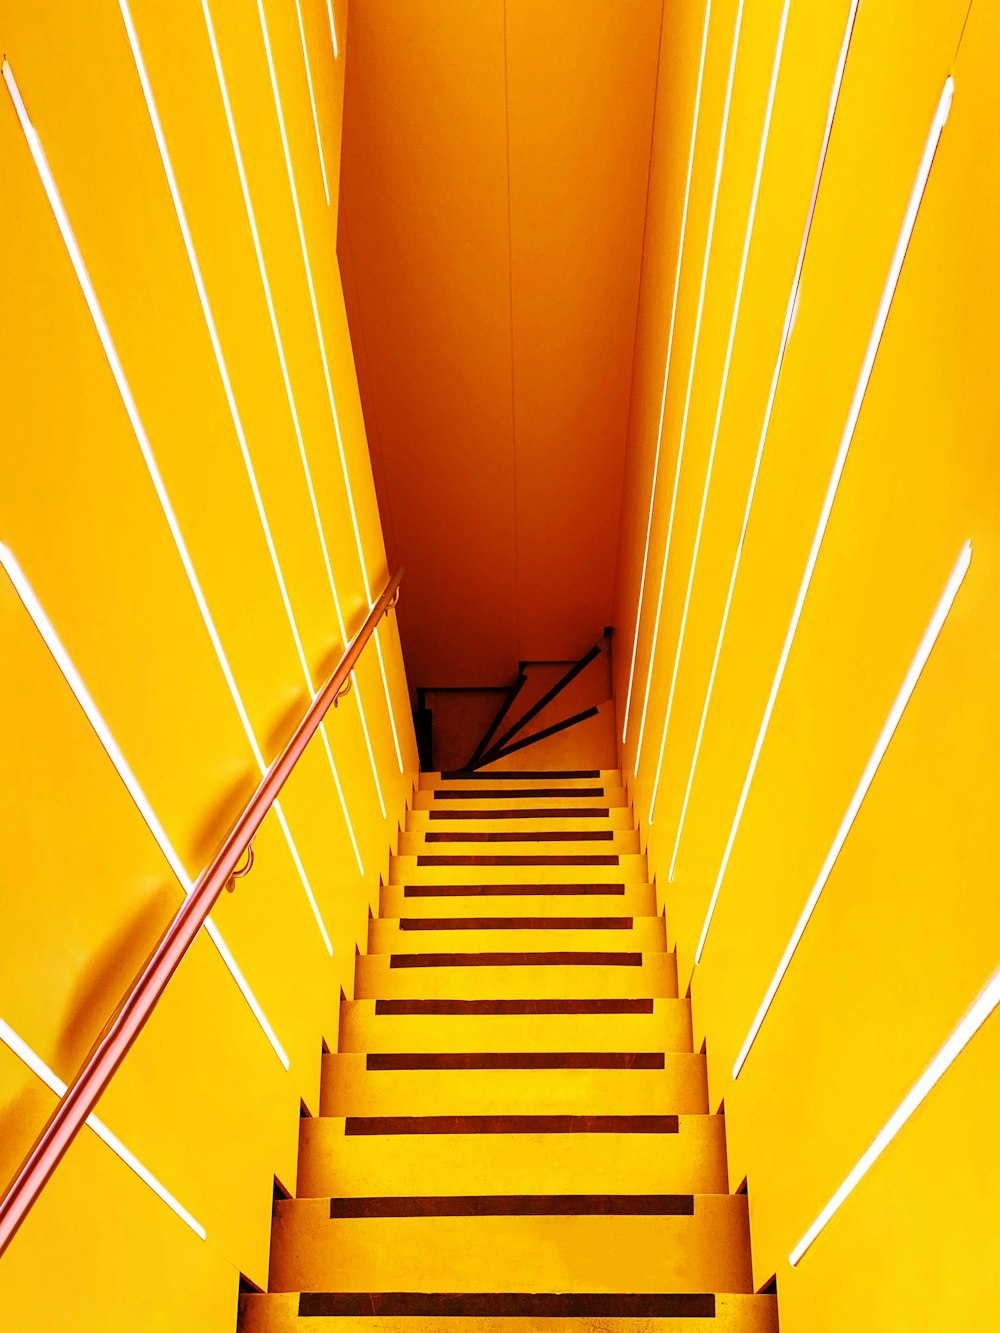 黄色い壁に続く階段のセット